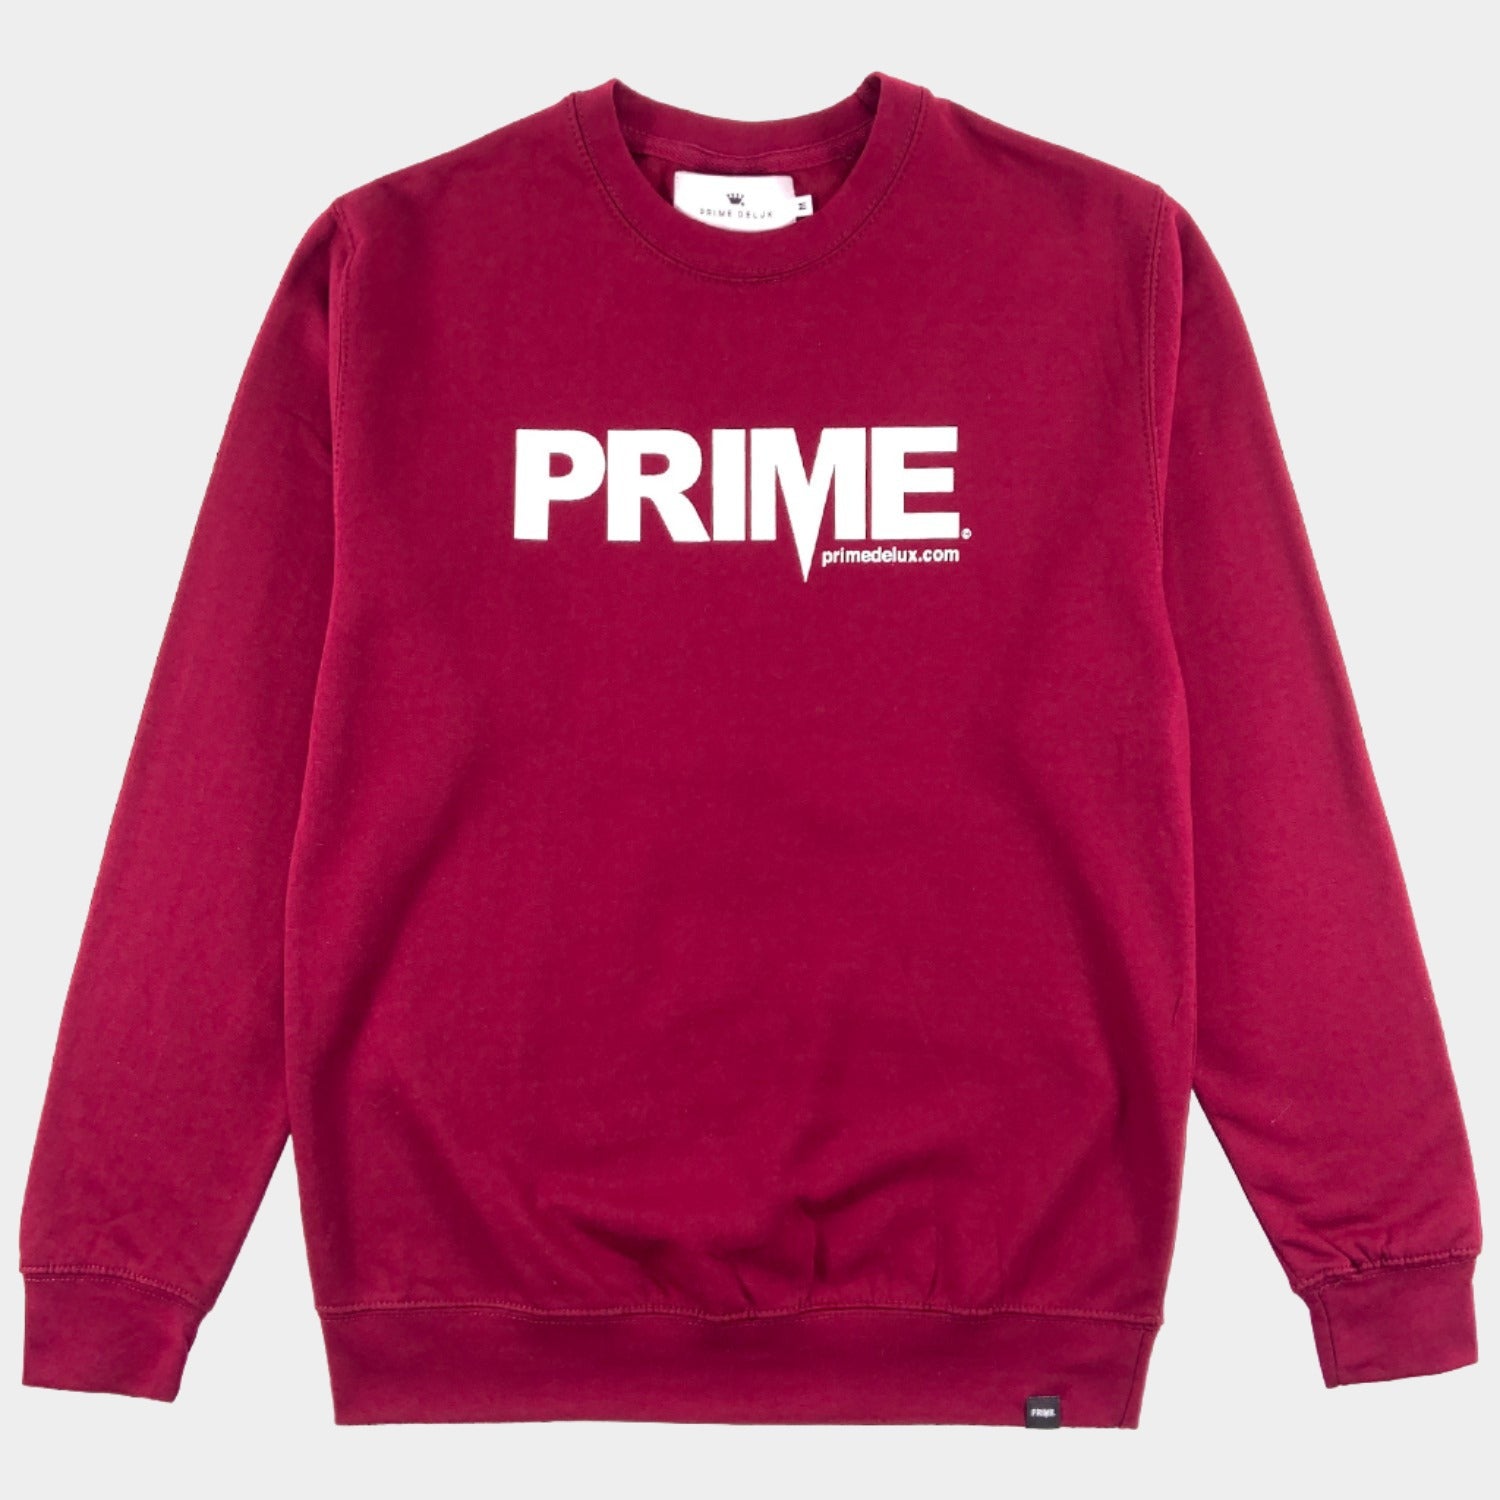 PRIME DELUX OG PREMIUM CREW SWEAT - BURGUNDY / WHITE - Prime Delux Store